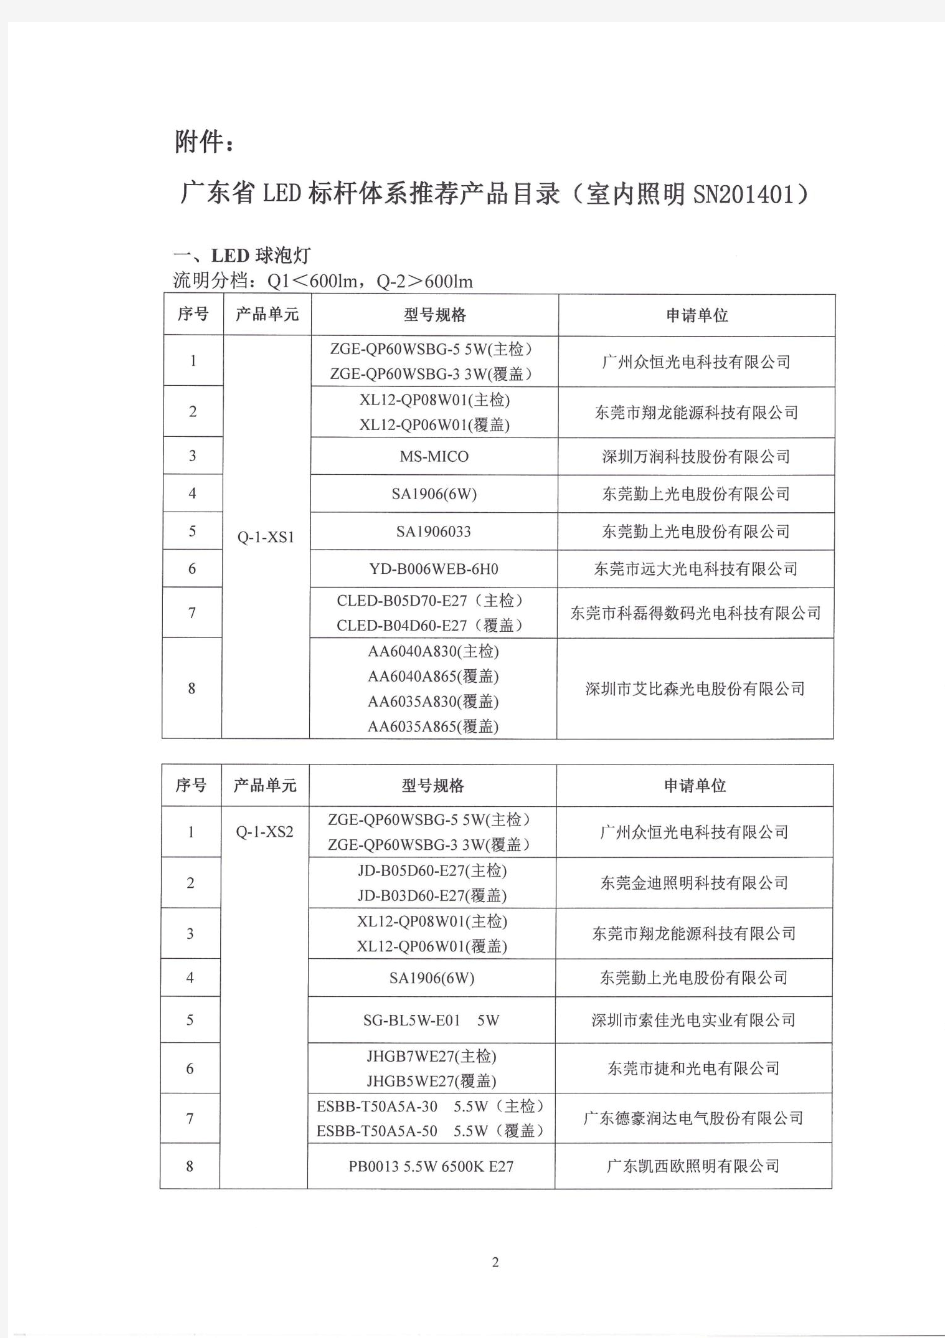 关于印发《广东省LED标杆体系推荐产品目录(室内照明SN201401)》的通知